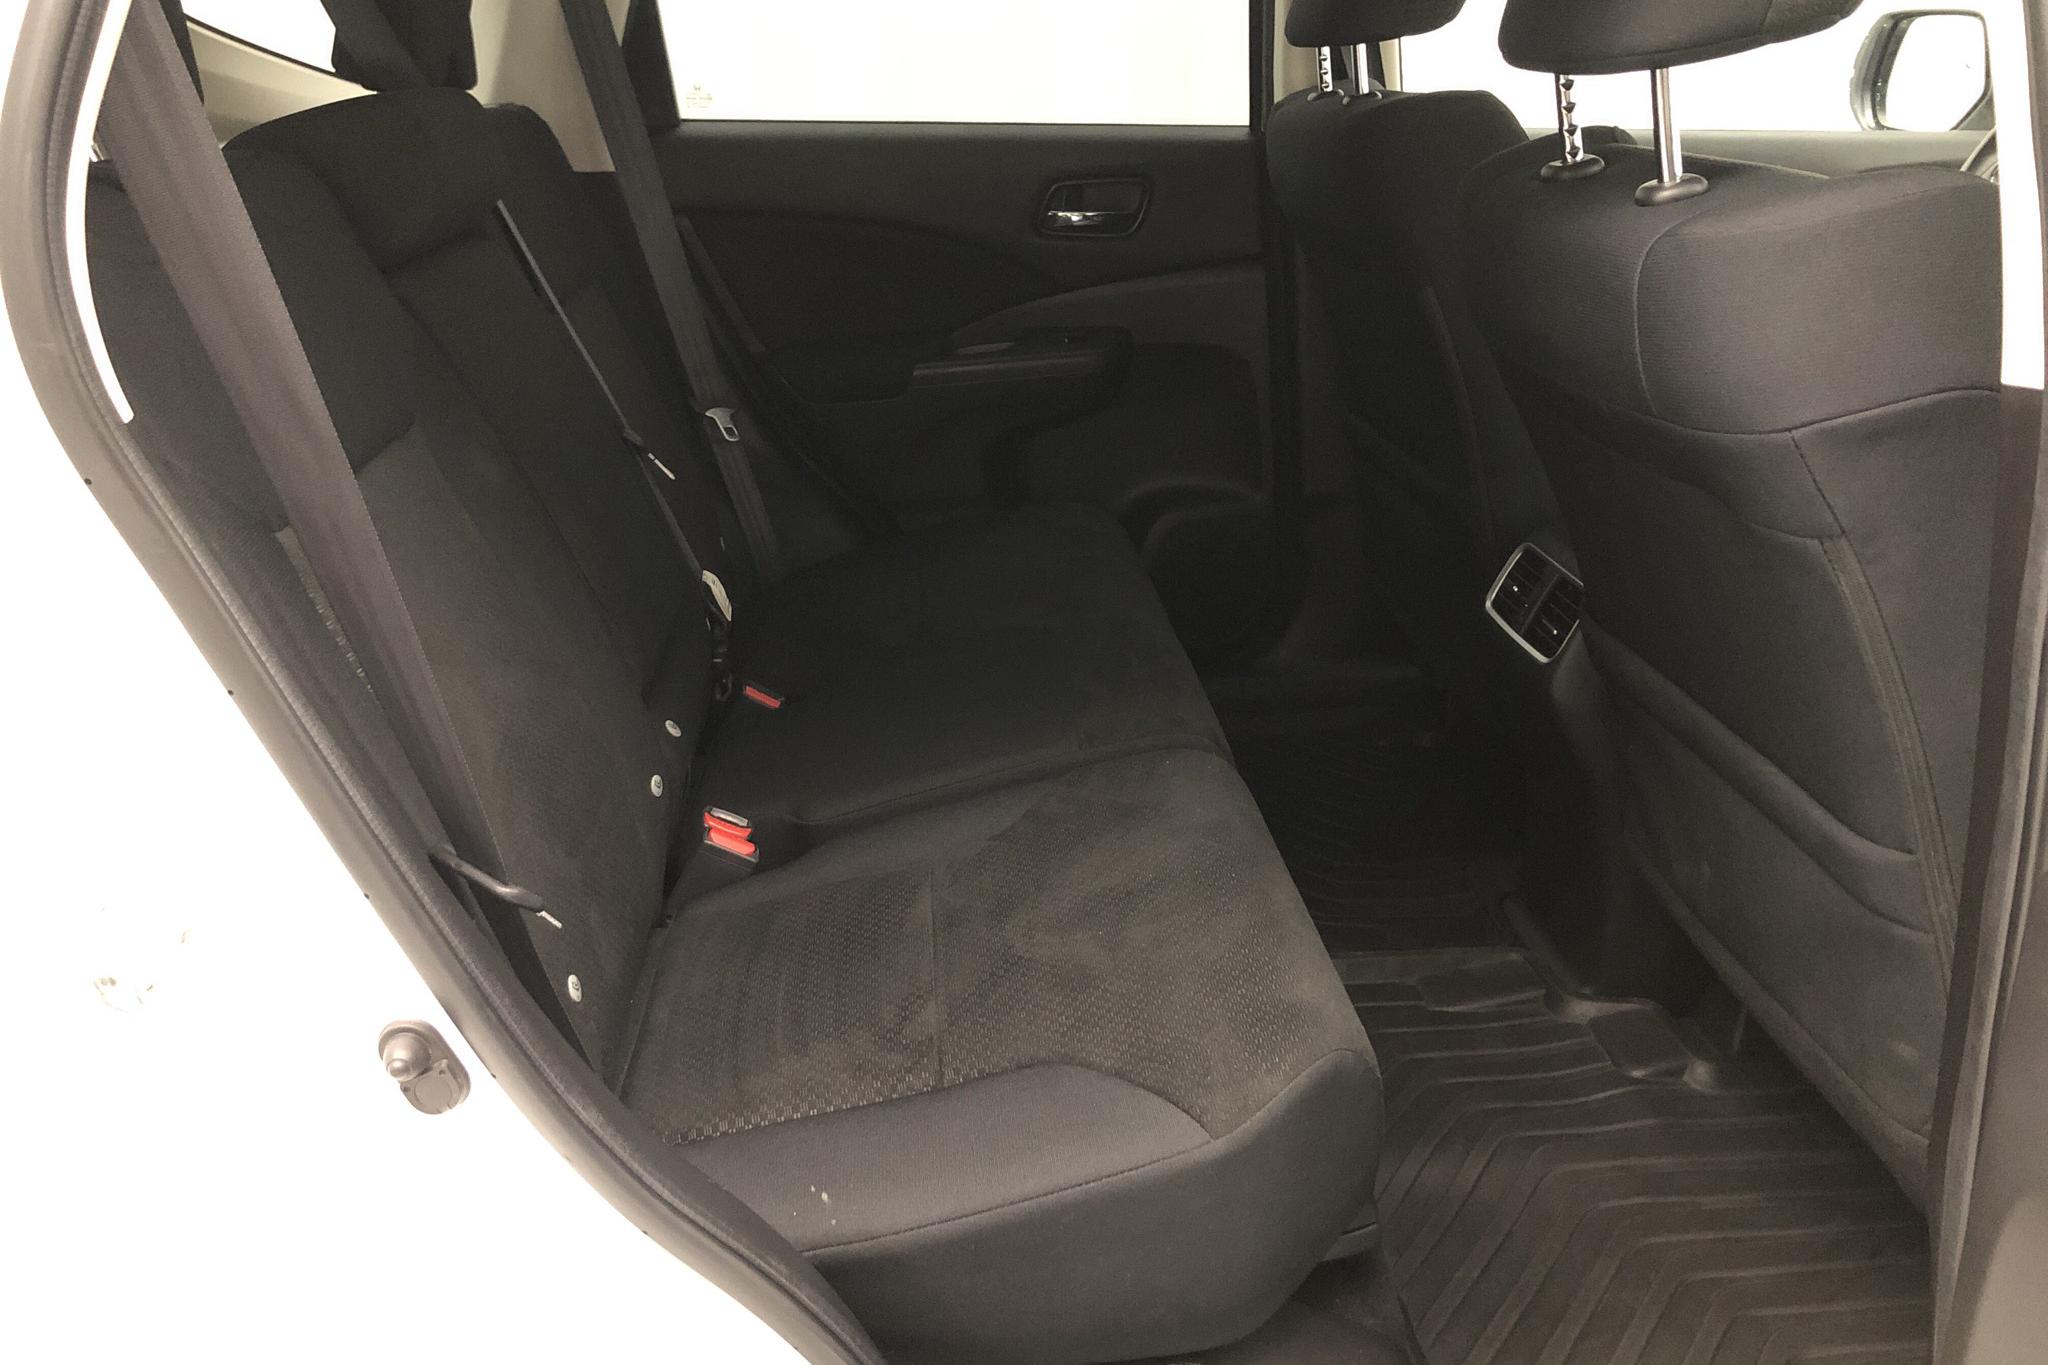 Honda CR-V 1.6 i-DTEC 2WD (120hk) - 71 100 km - Manual - white - 2017